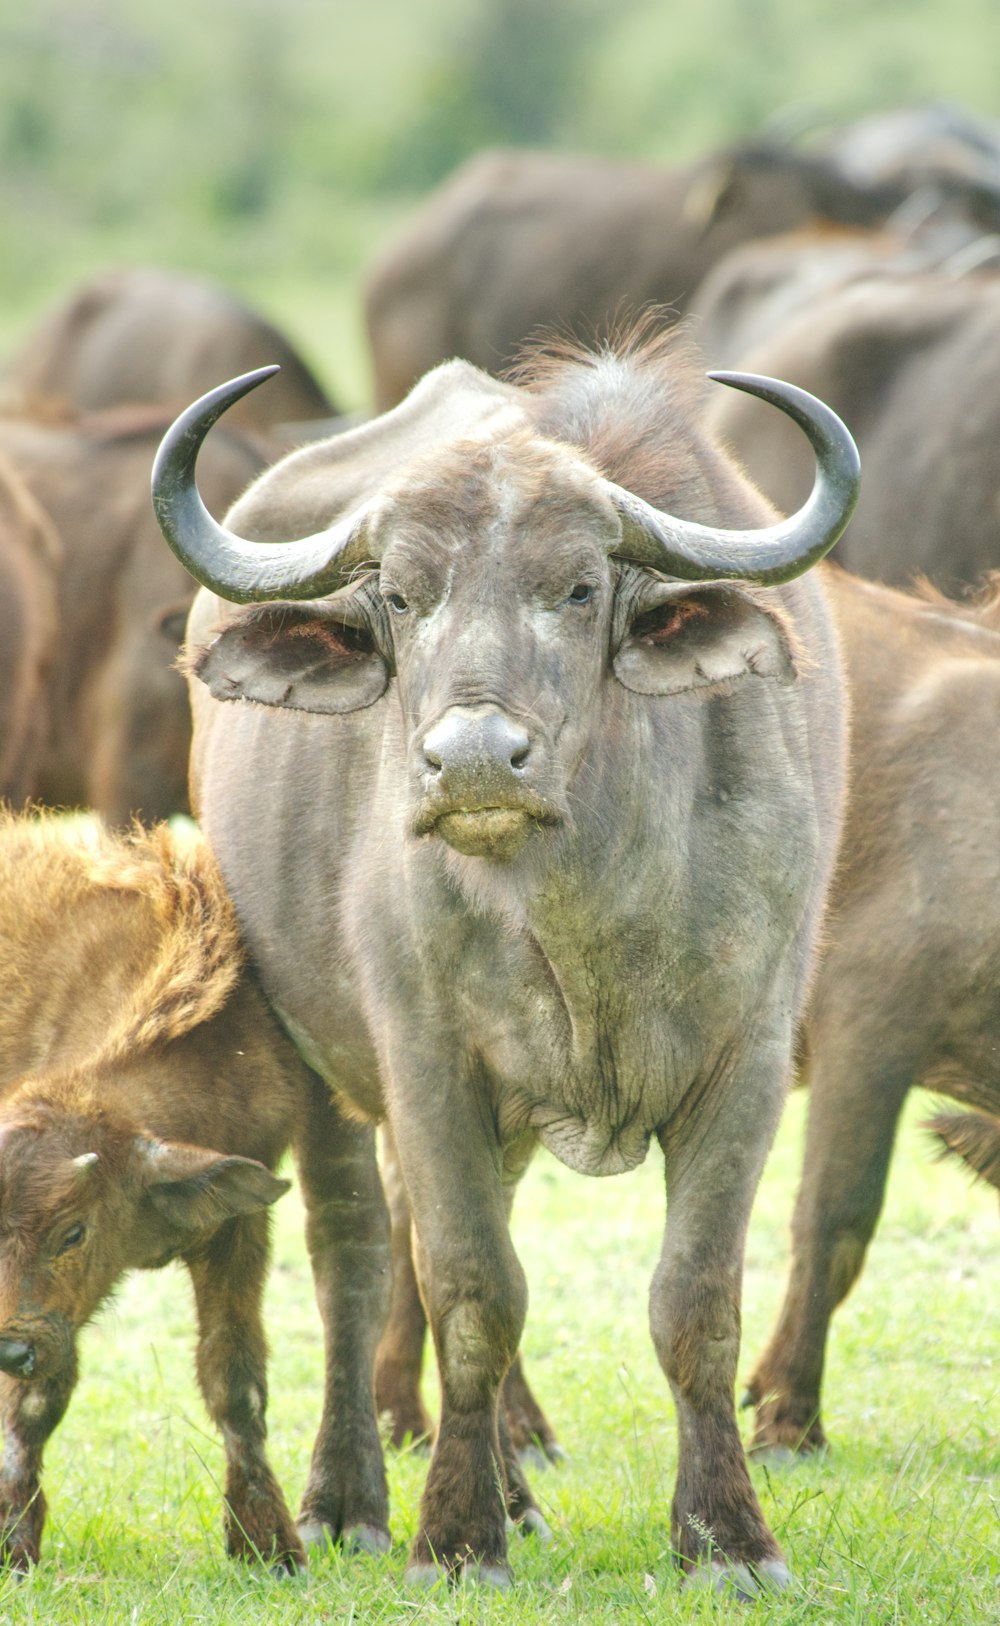 búfalo de água preta no campo de grama verde durante o dia